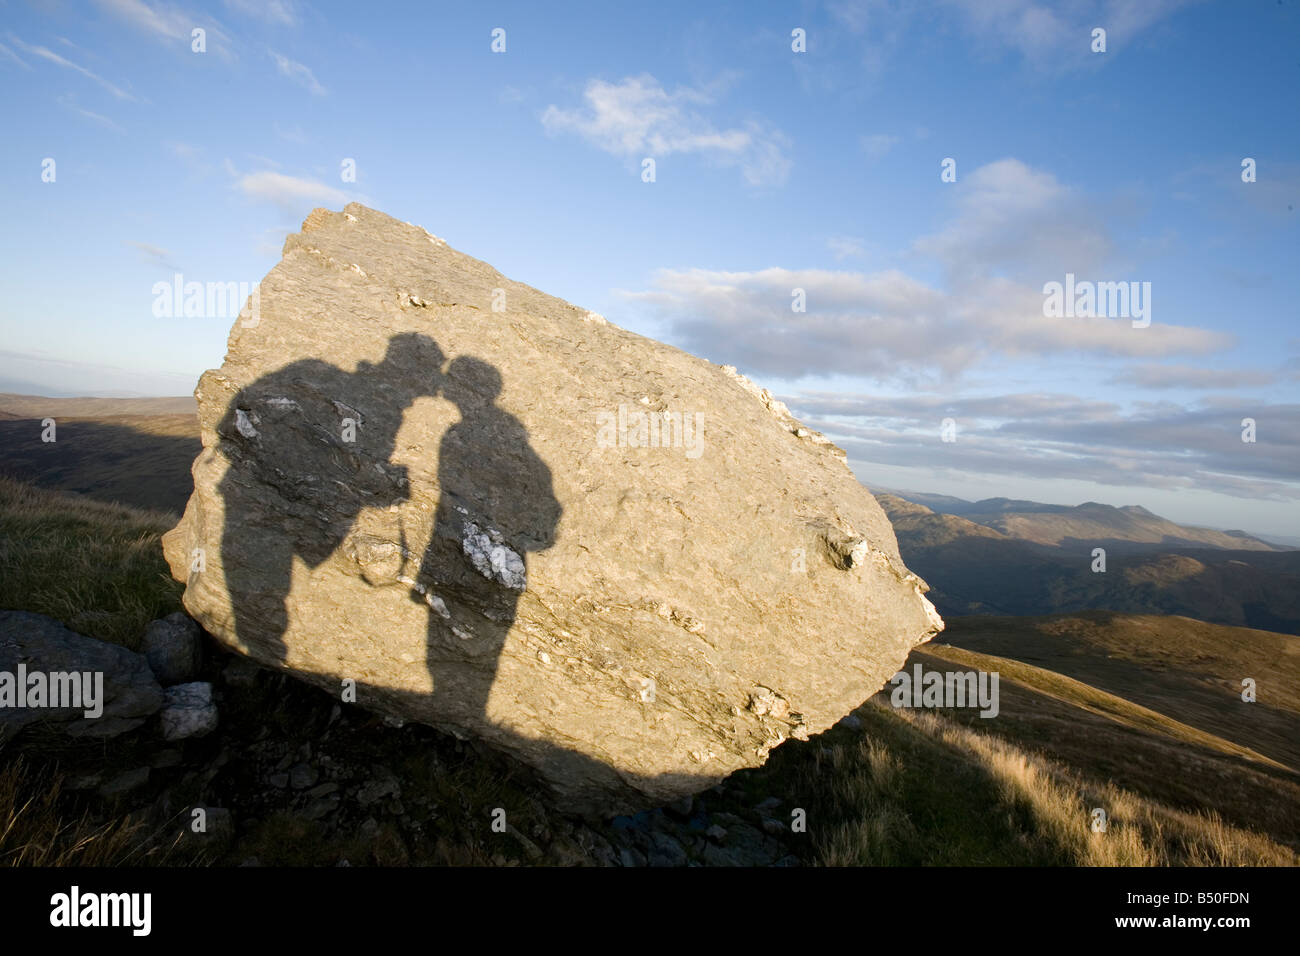 La sombra de dos personas besándose en una roca con un fondo escénico Foto de stock